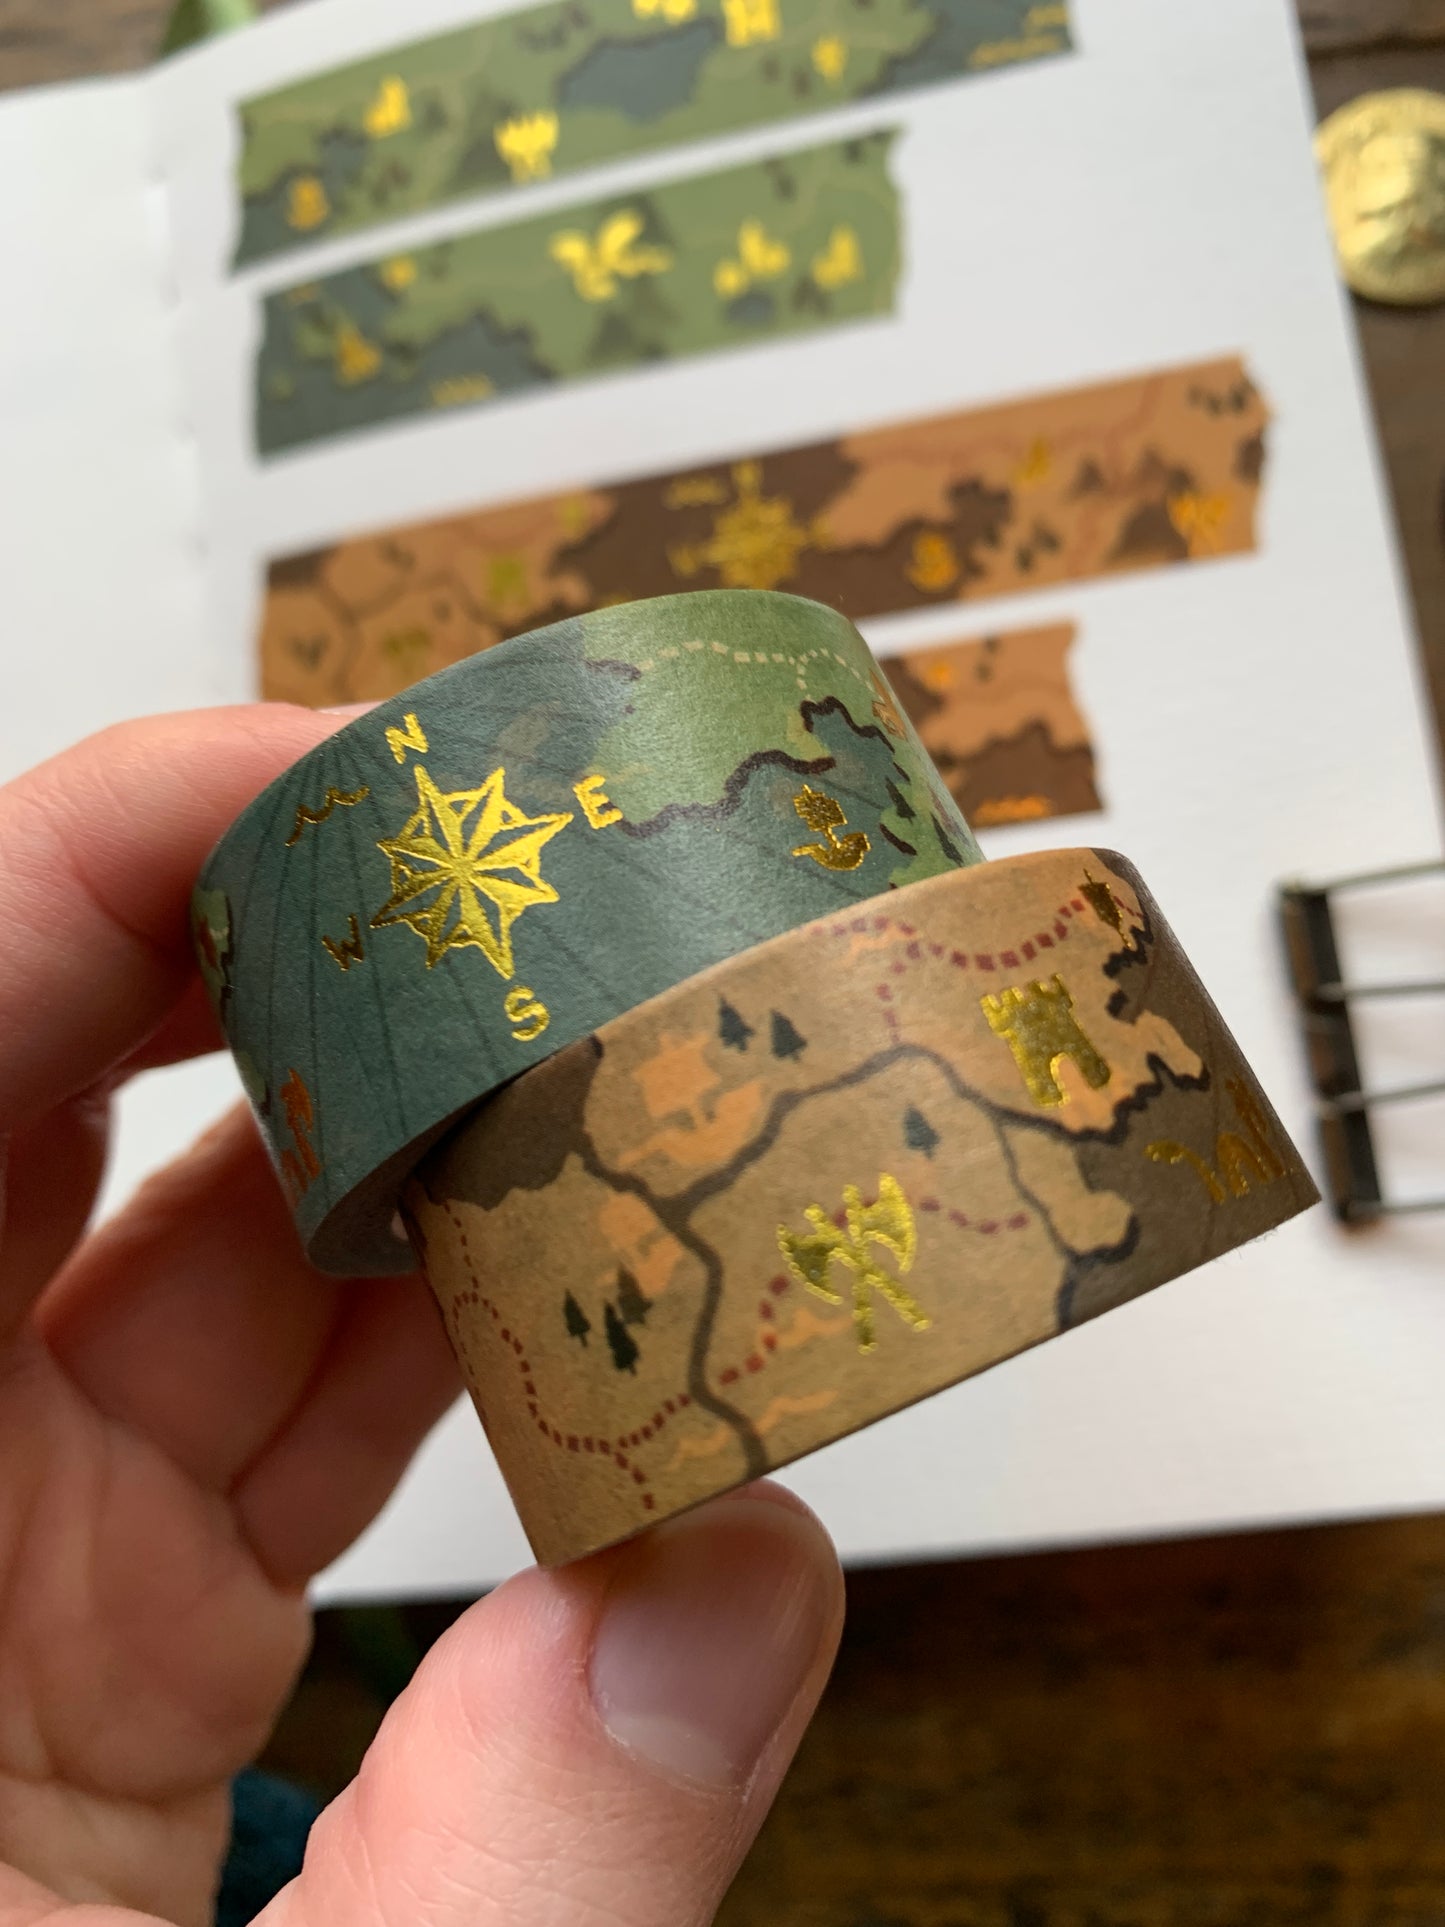 Fantasy maps 20mm gold foil washi tape